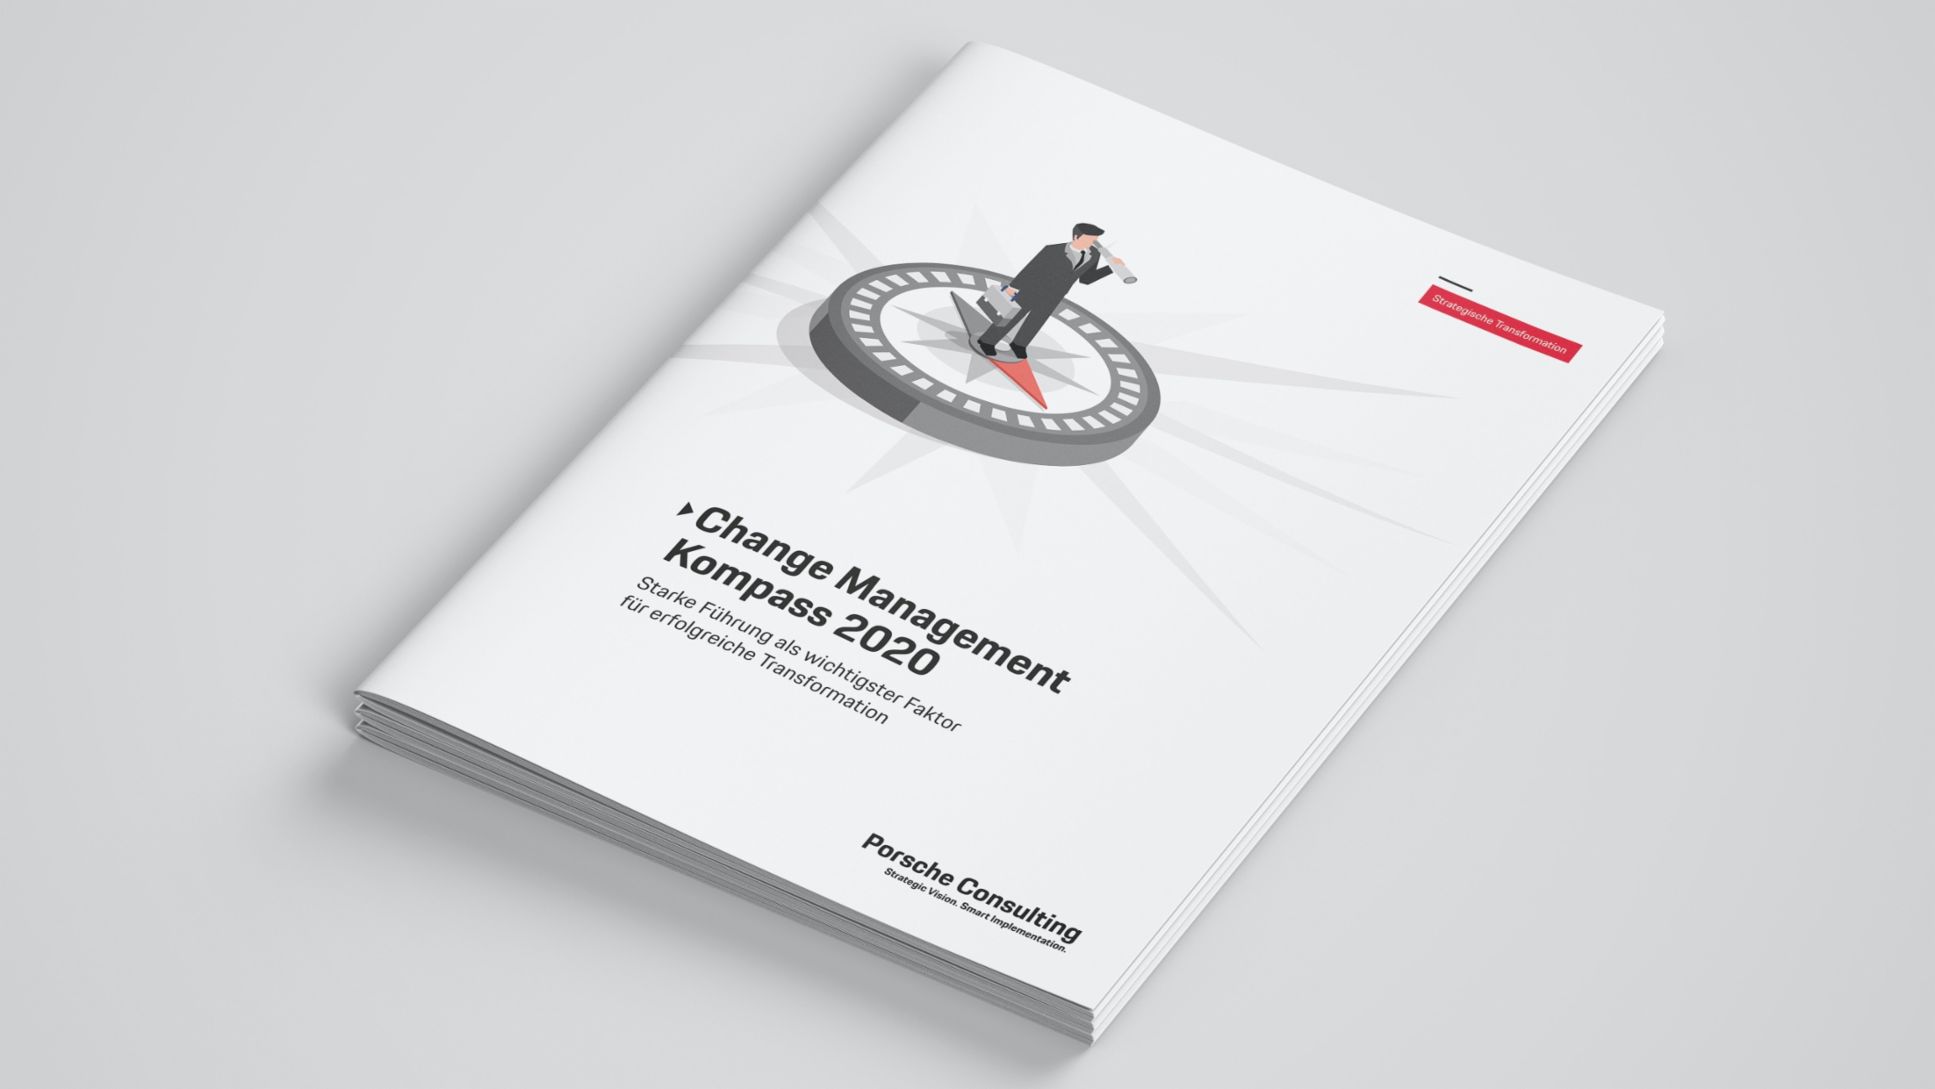 Change Management Kompass 2020, Studie, Porsche Consulting GmbH